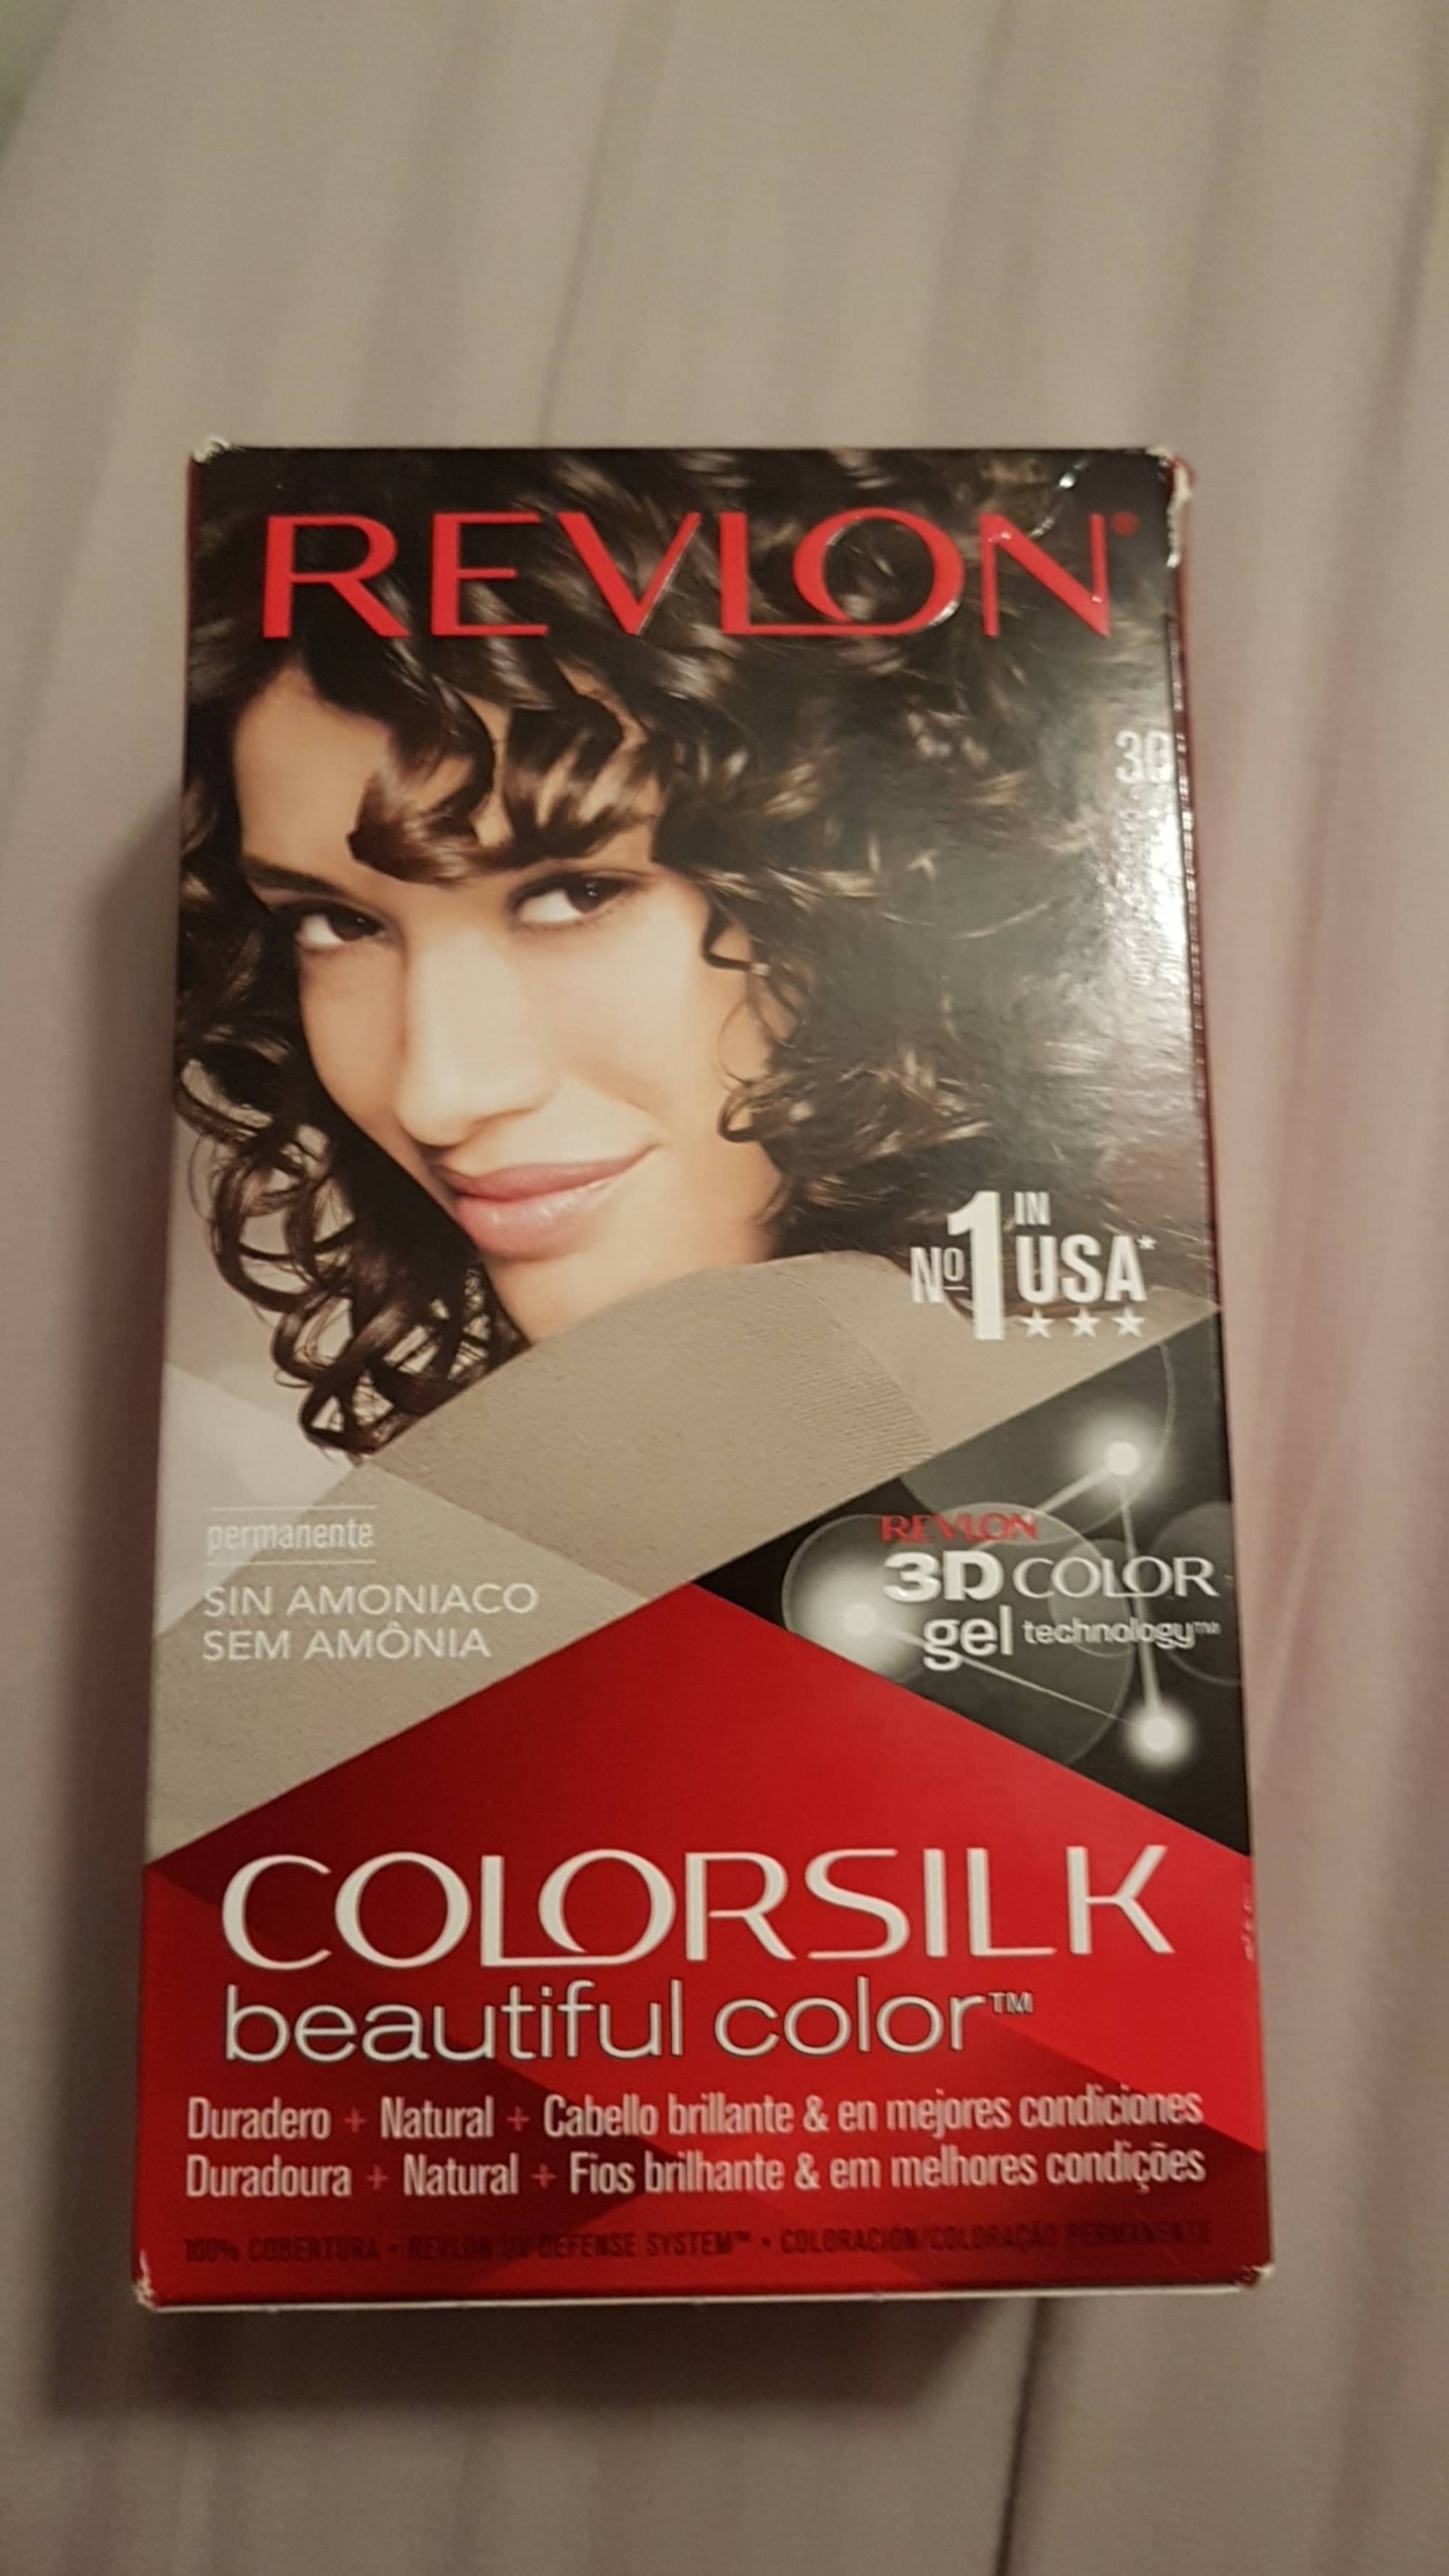 REVLON - Colorsilk - Beautiful color